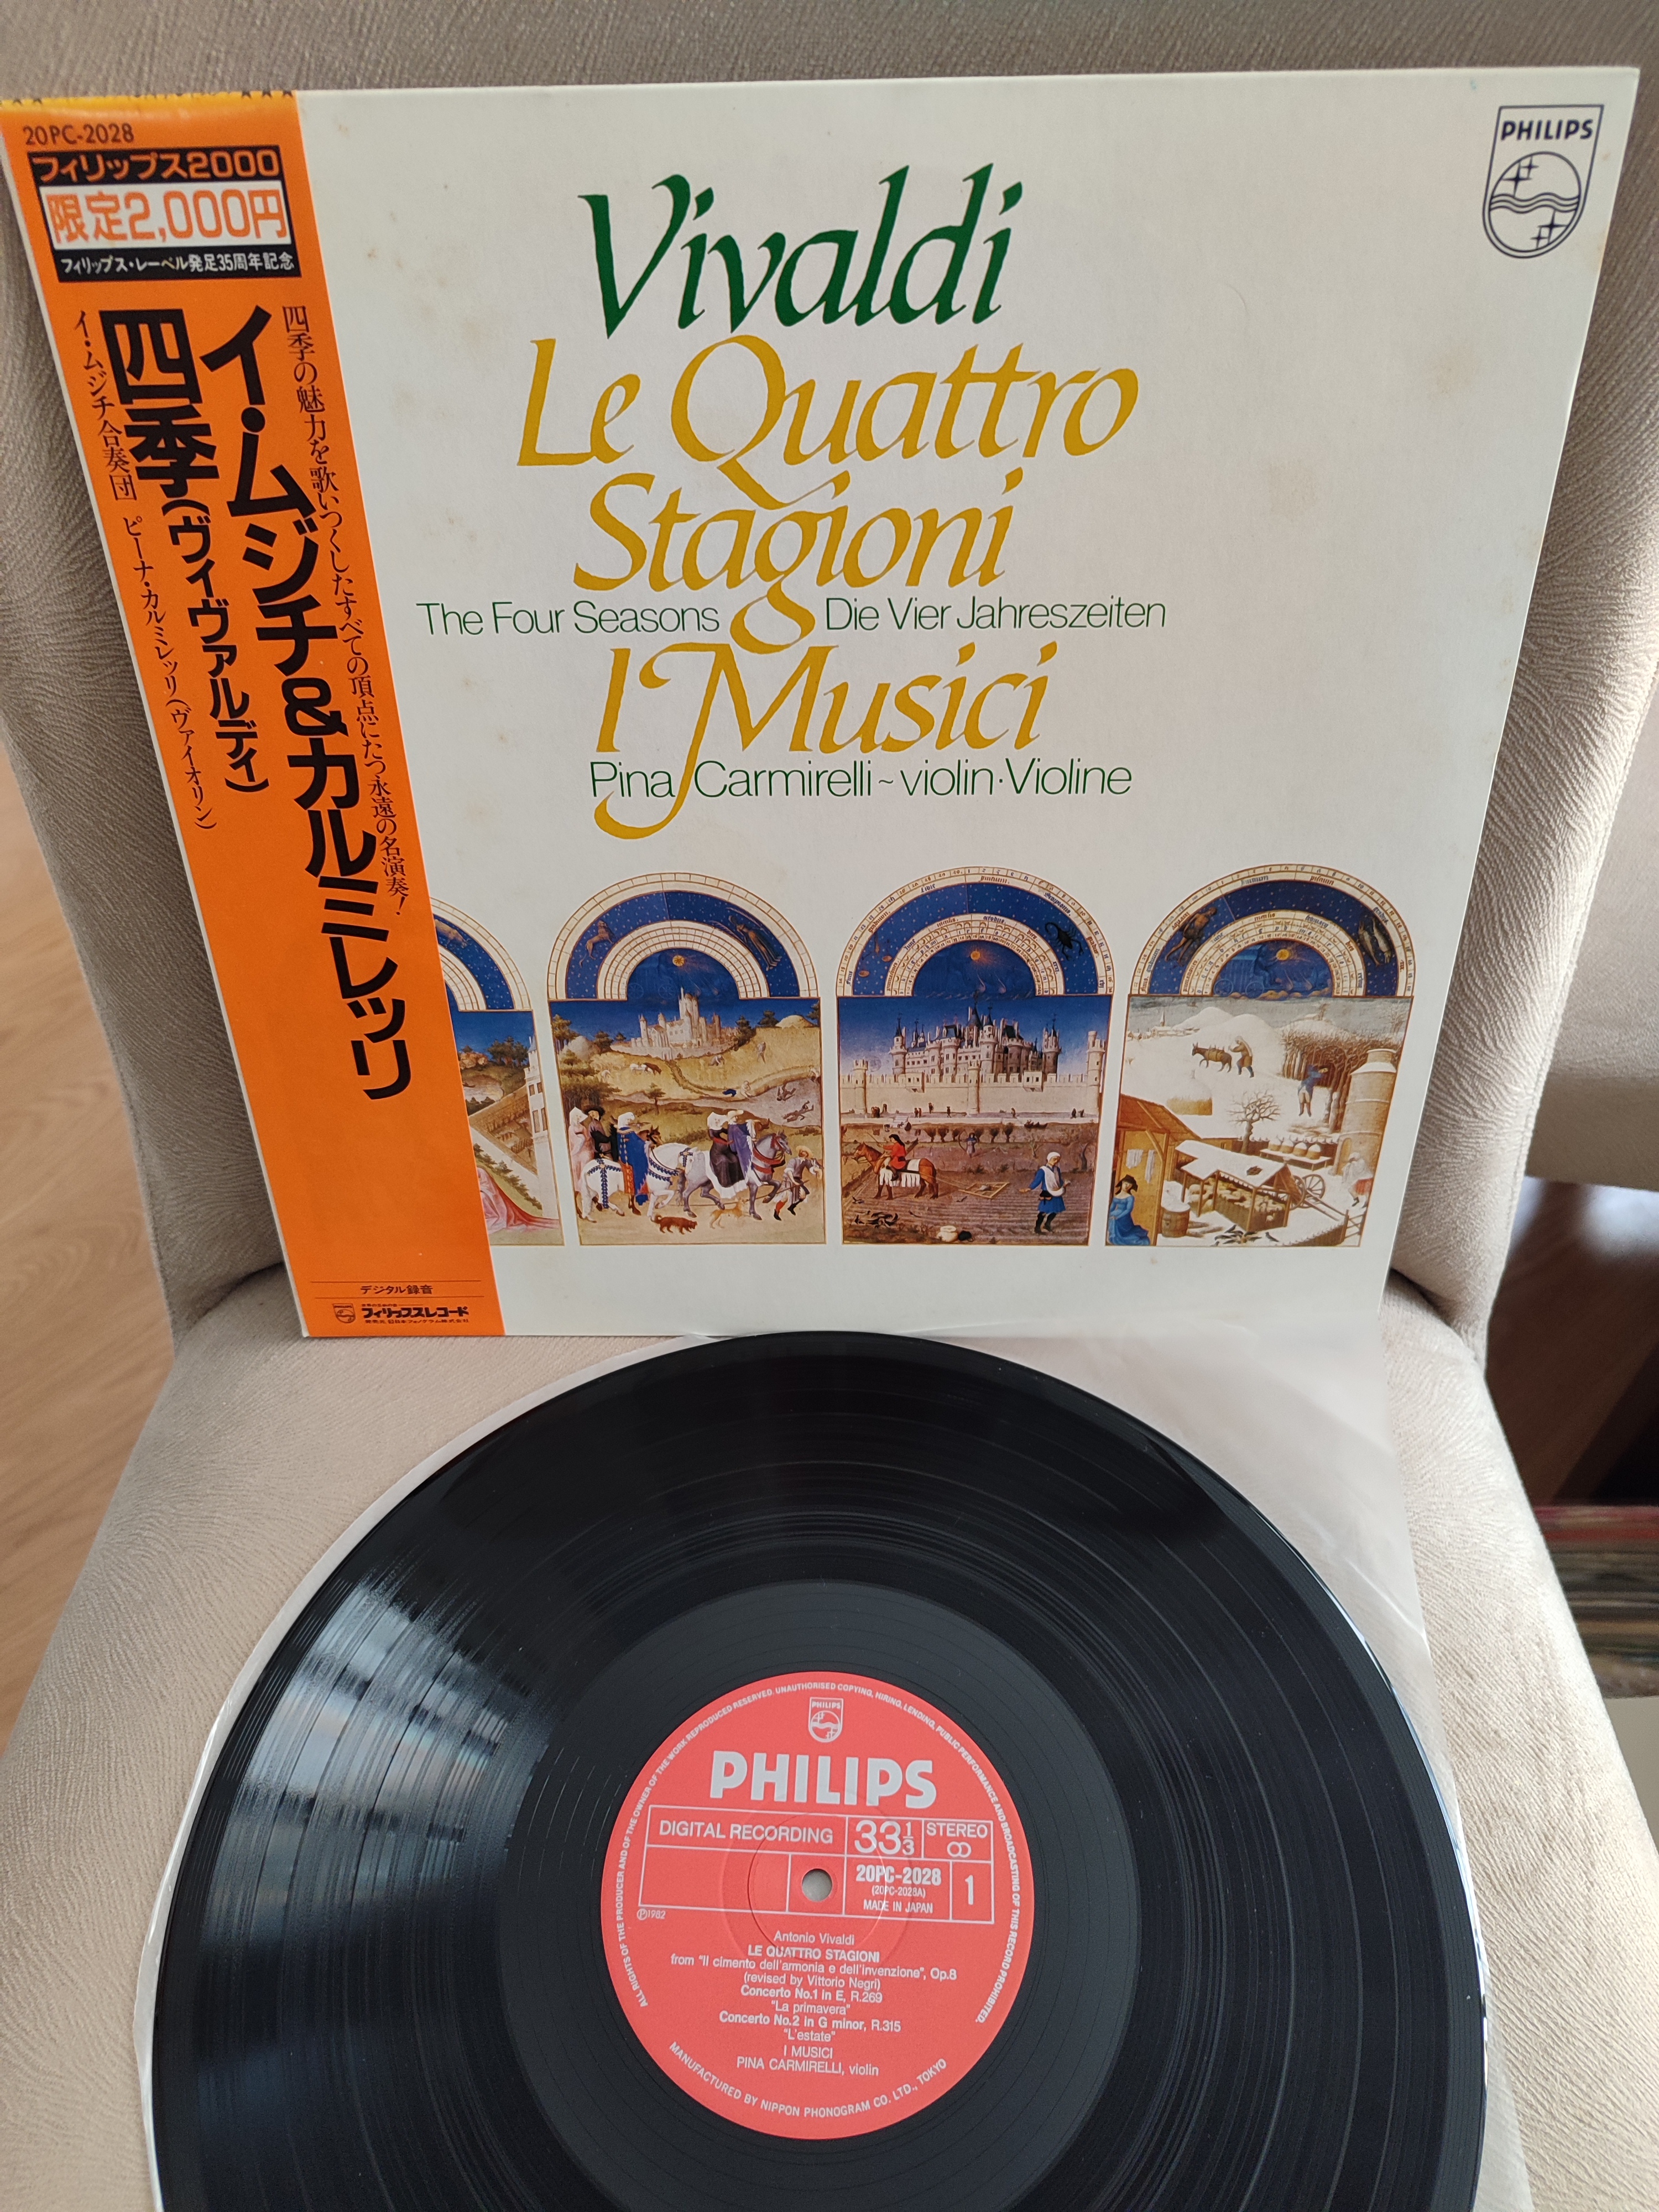 VIVALDI - Dört Mevsim - Pina Carmirelli - 1982 Japonya Basım - 33lük LP Plak Albüm -Obi’li 2. EL